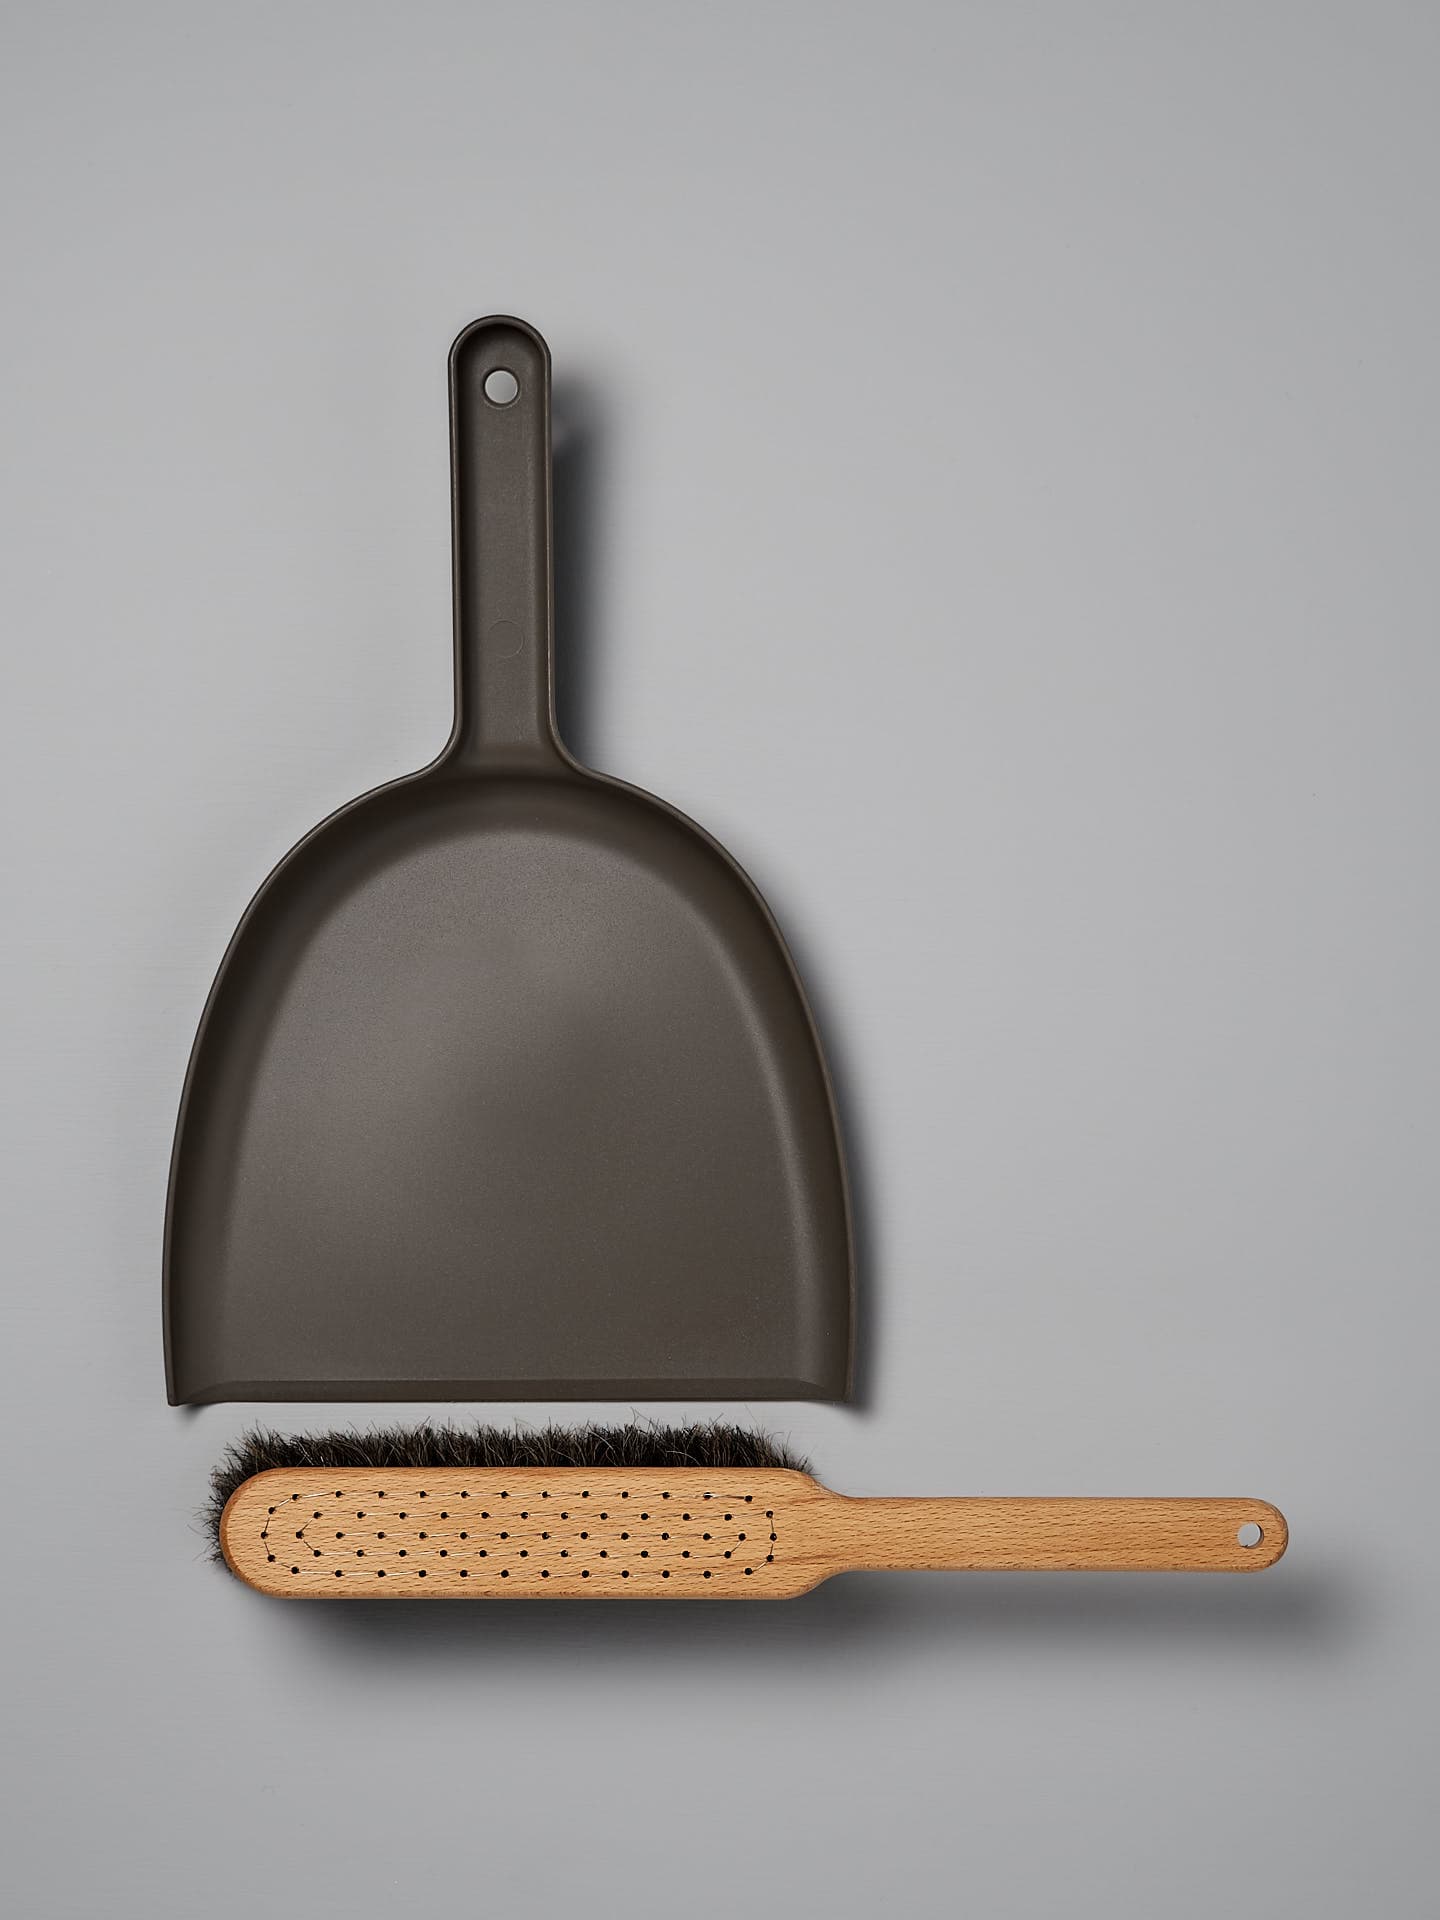 A Dustpan & Brush Set – Umber from Iris Hantverk lies on a grey surface.